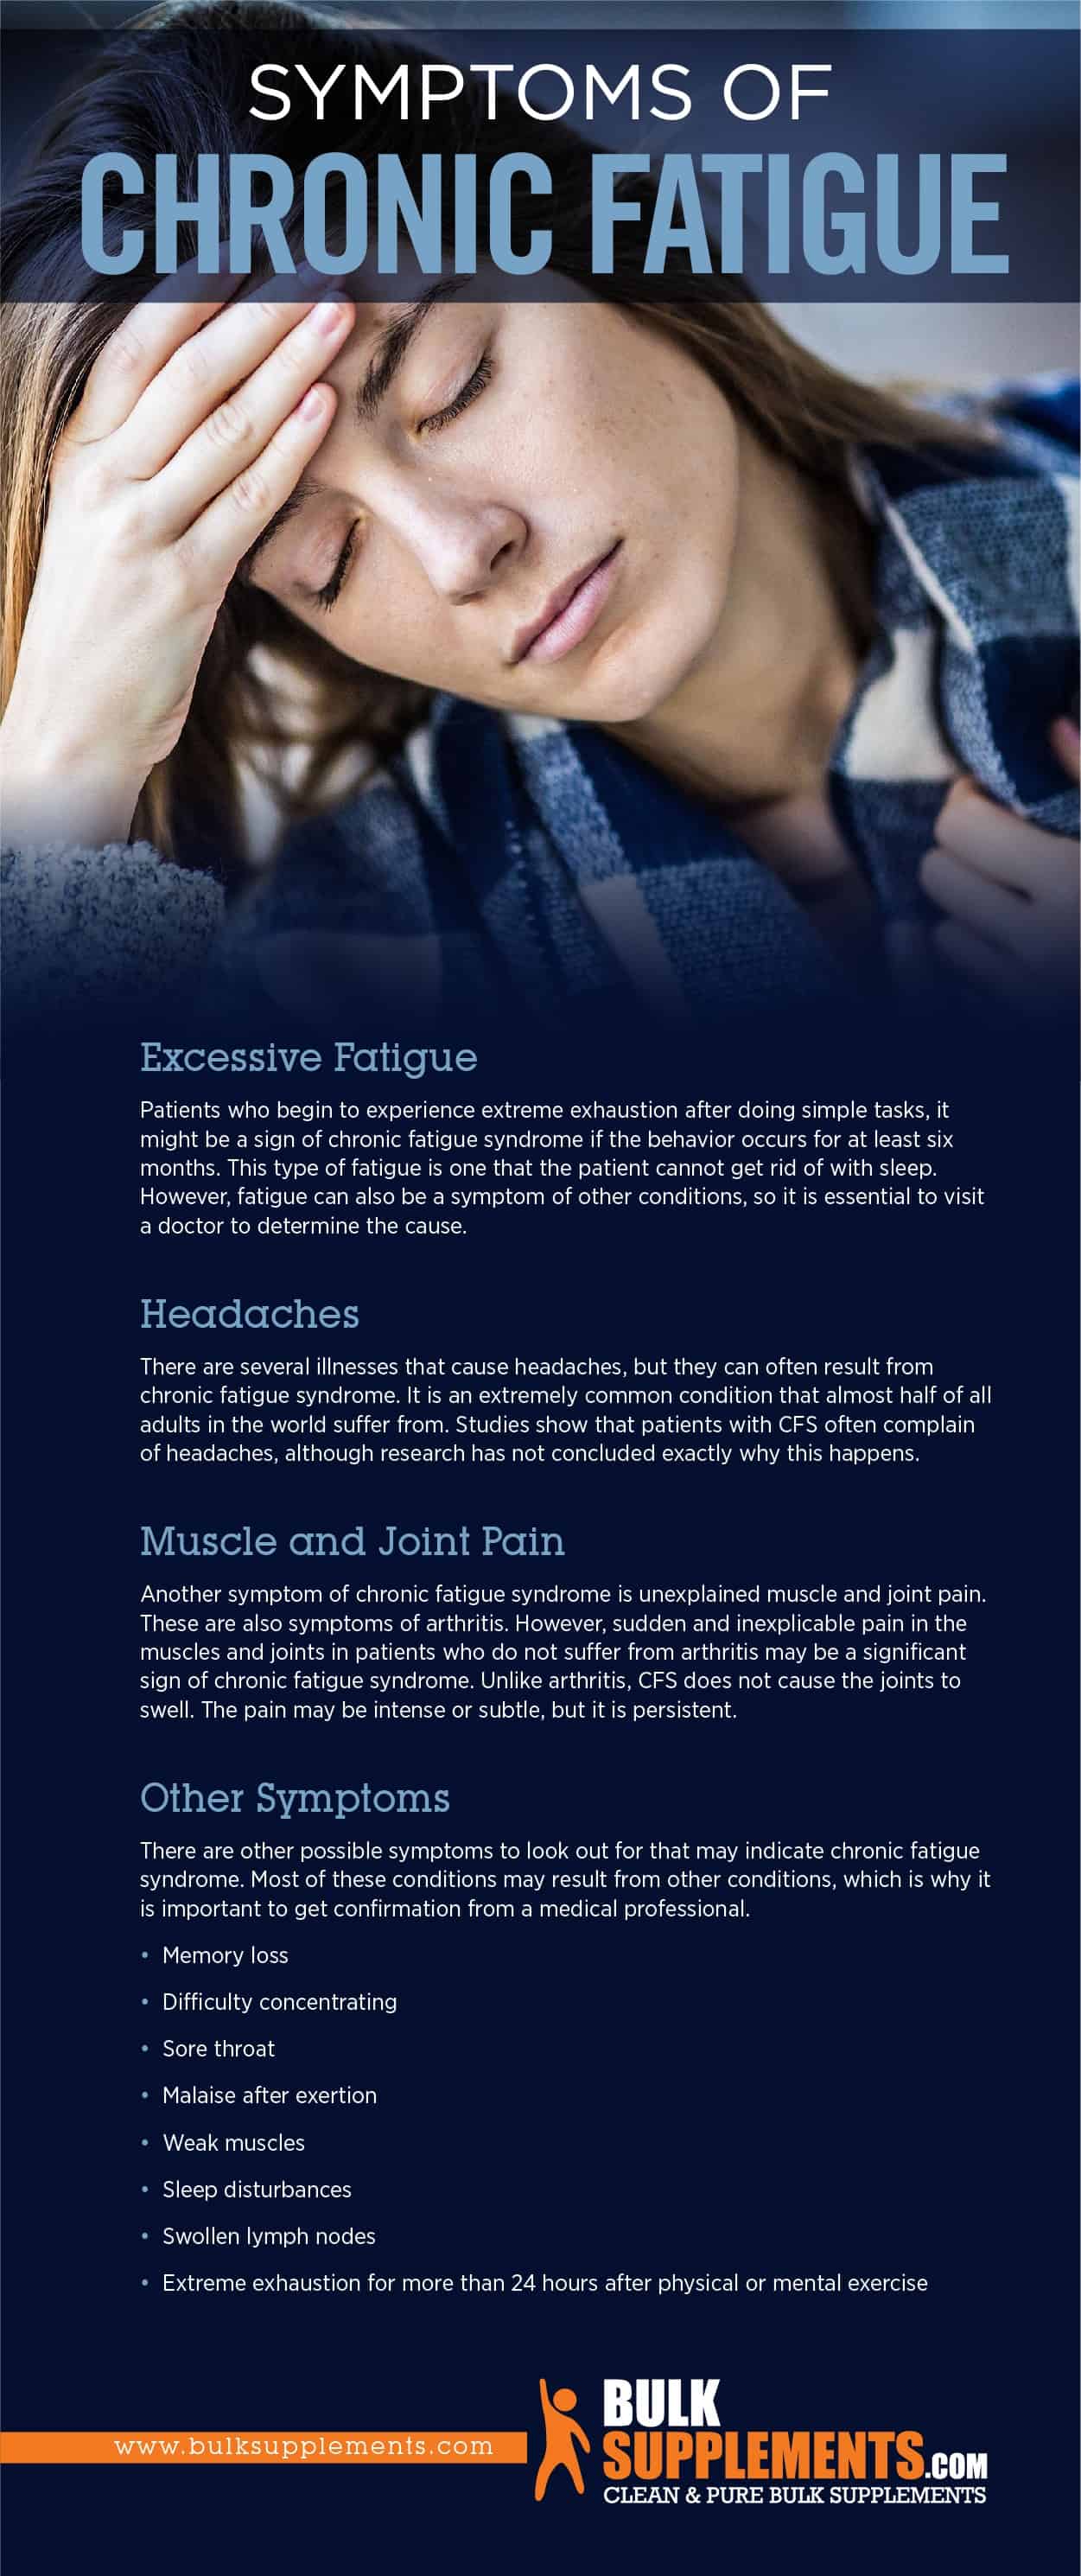 Symptoms of Chronic Fatigue